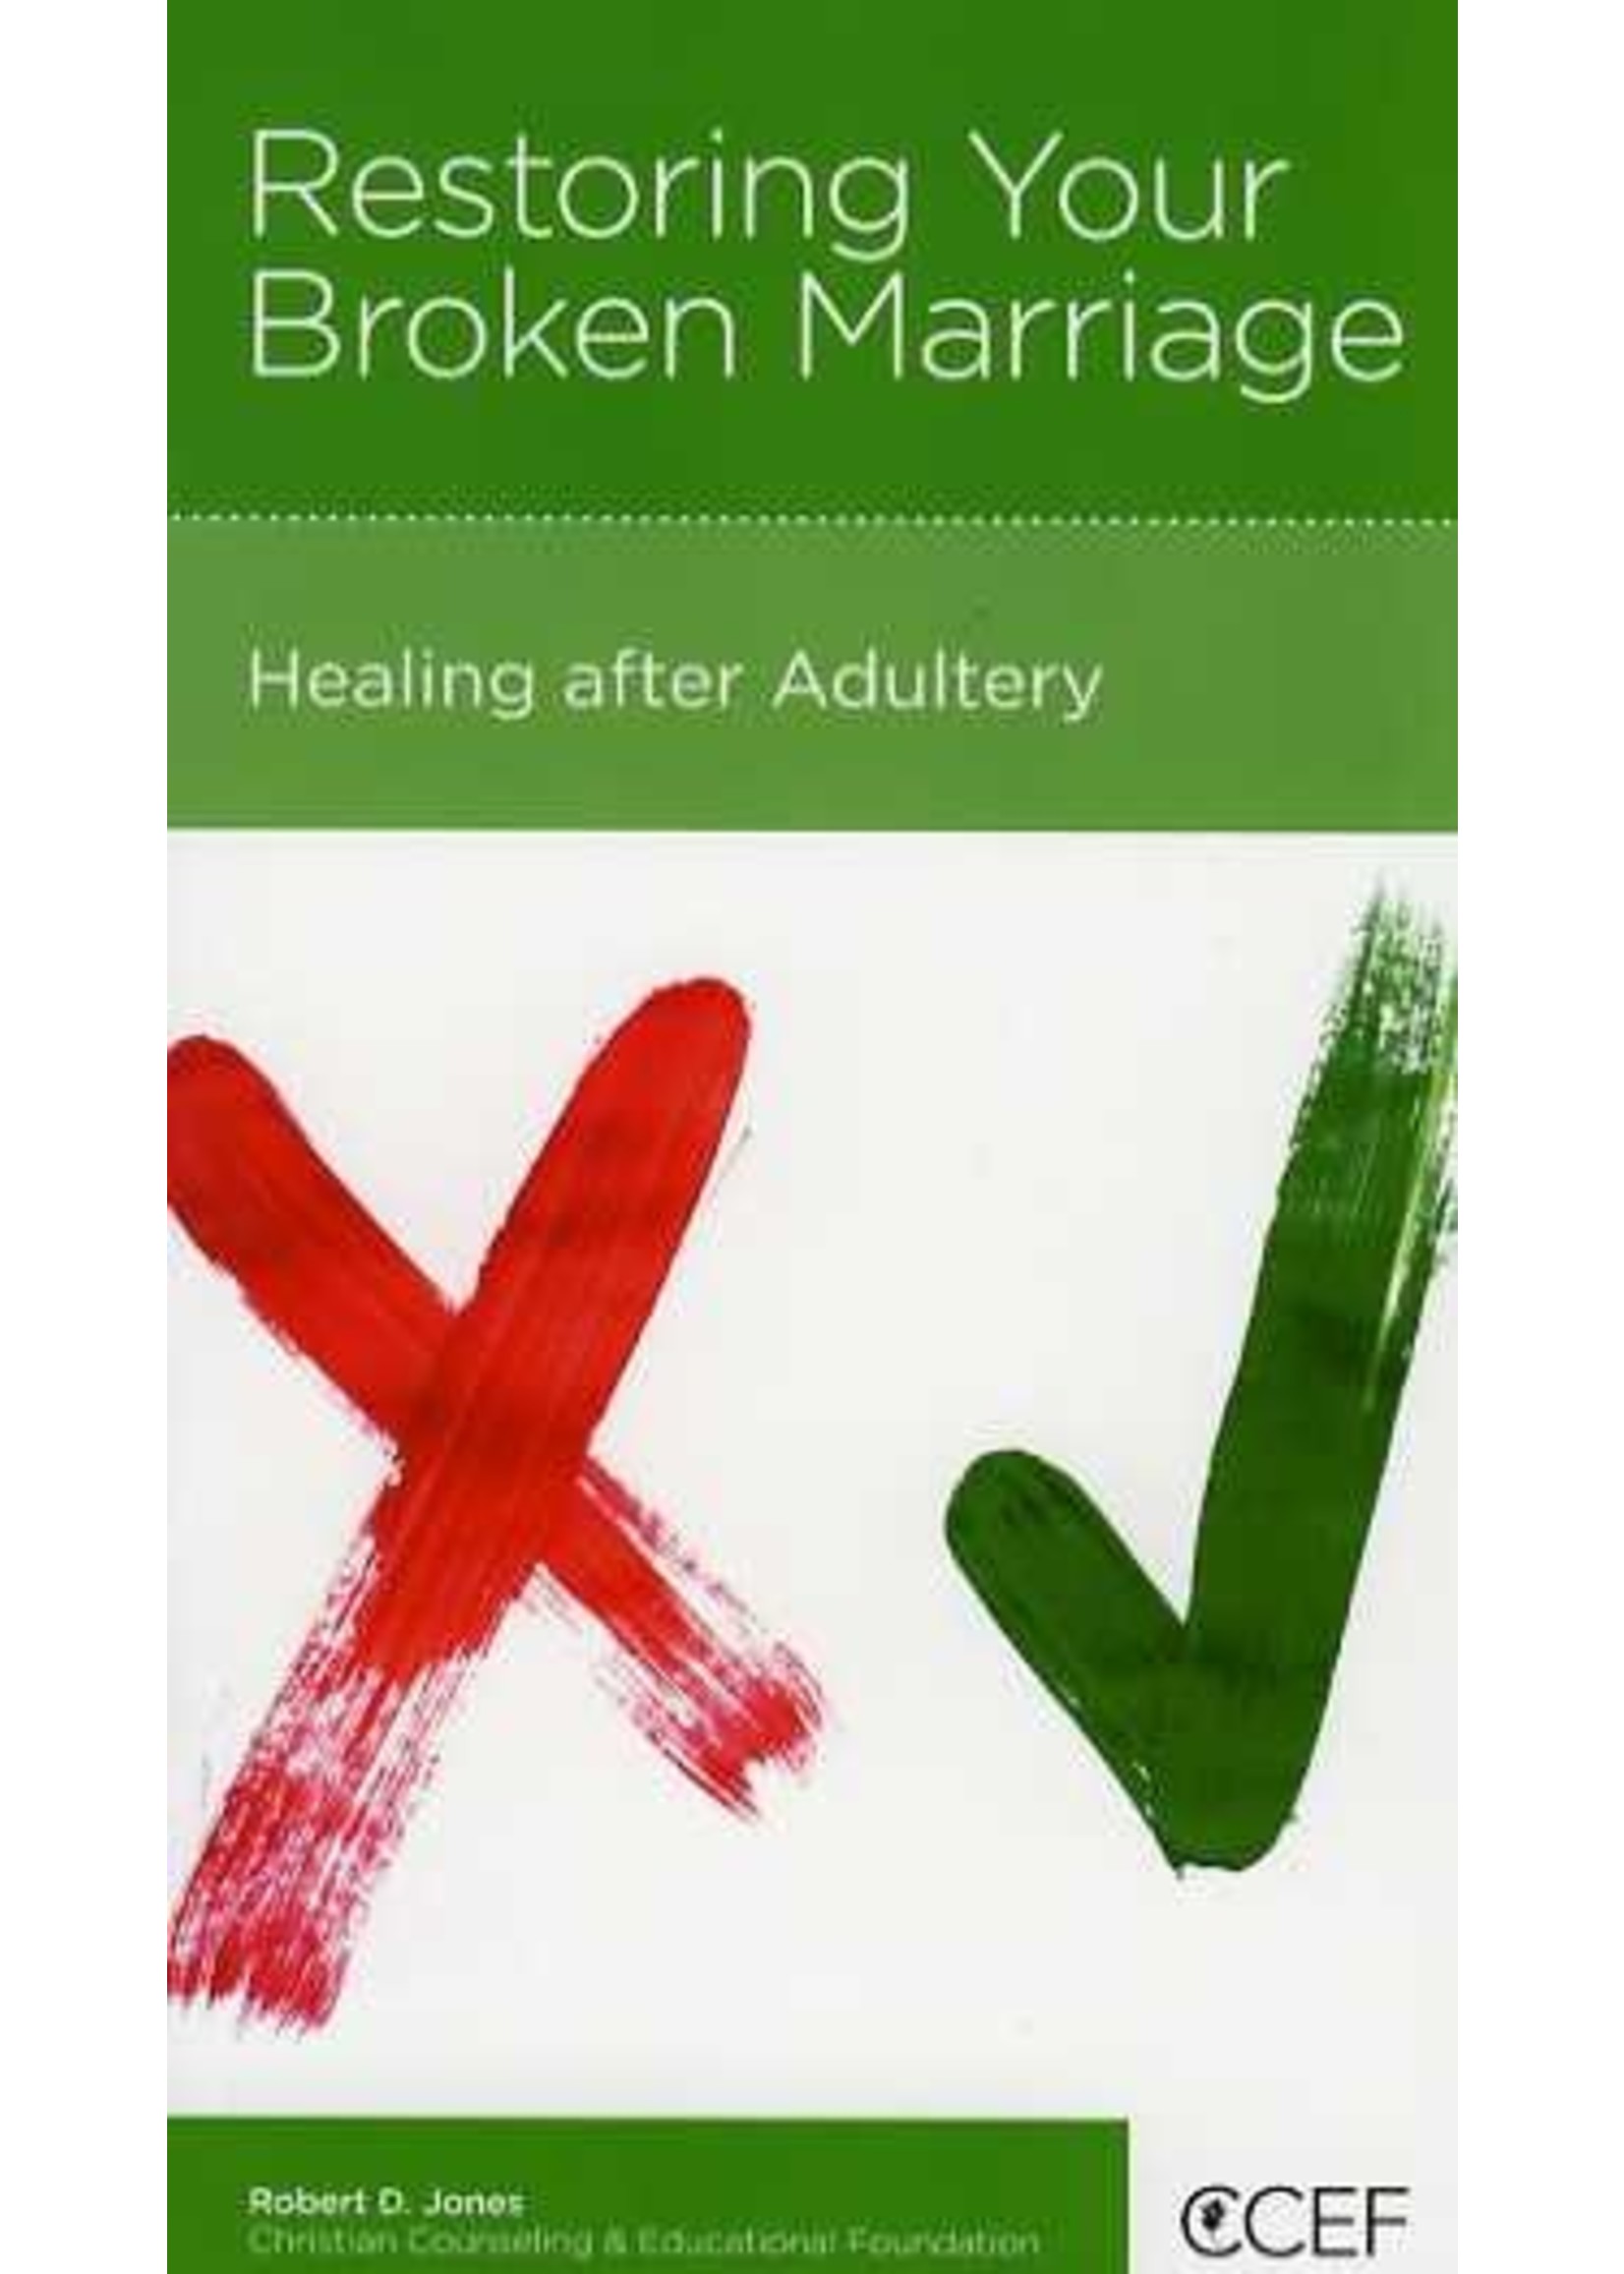 New Growth Press Restoring Your Broken Marriage - Robert Jones